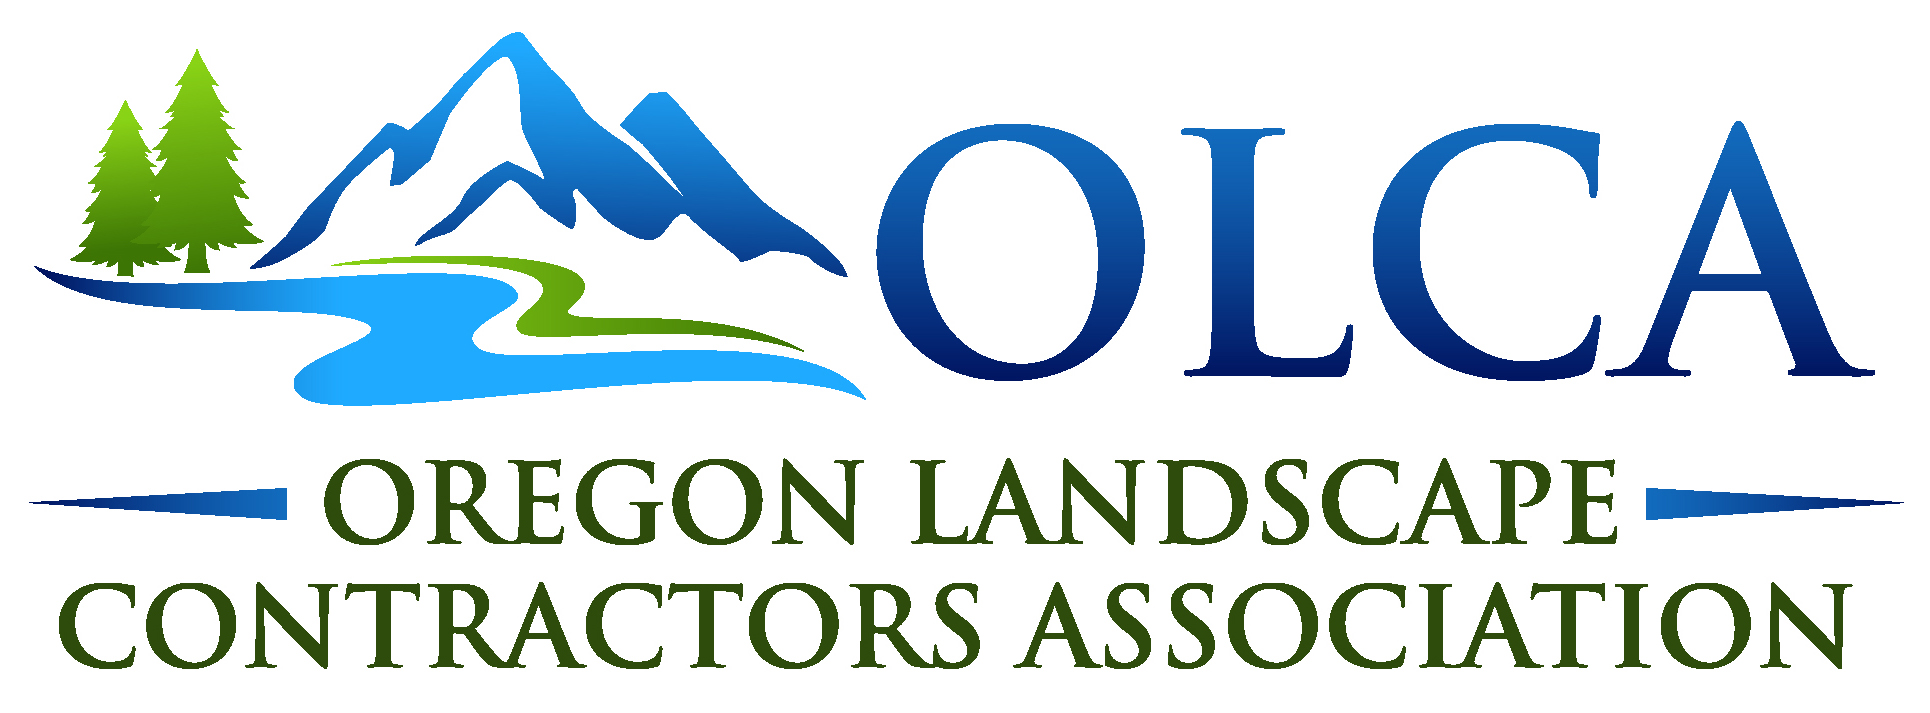 Oregon Landscape Contractors Association